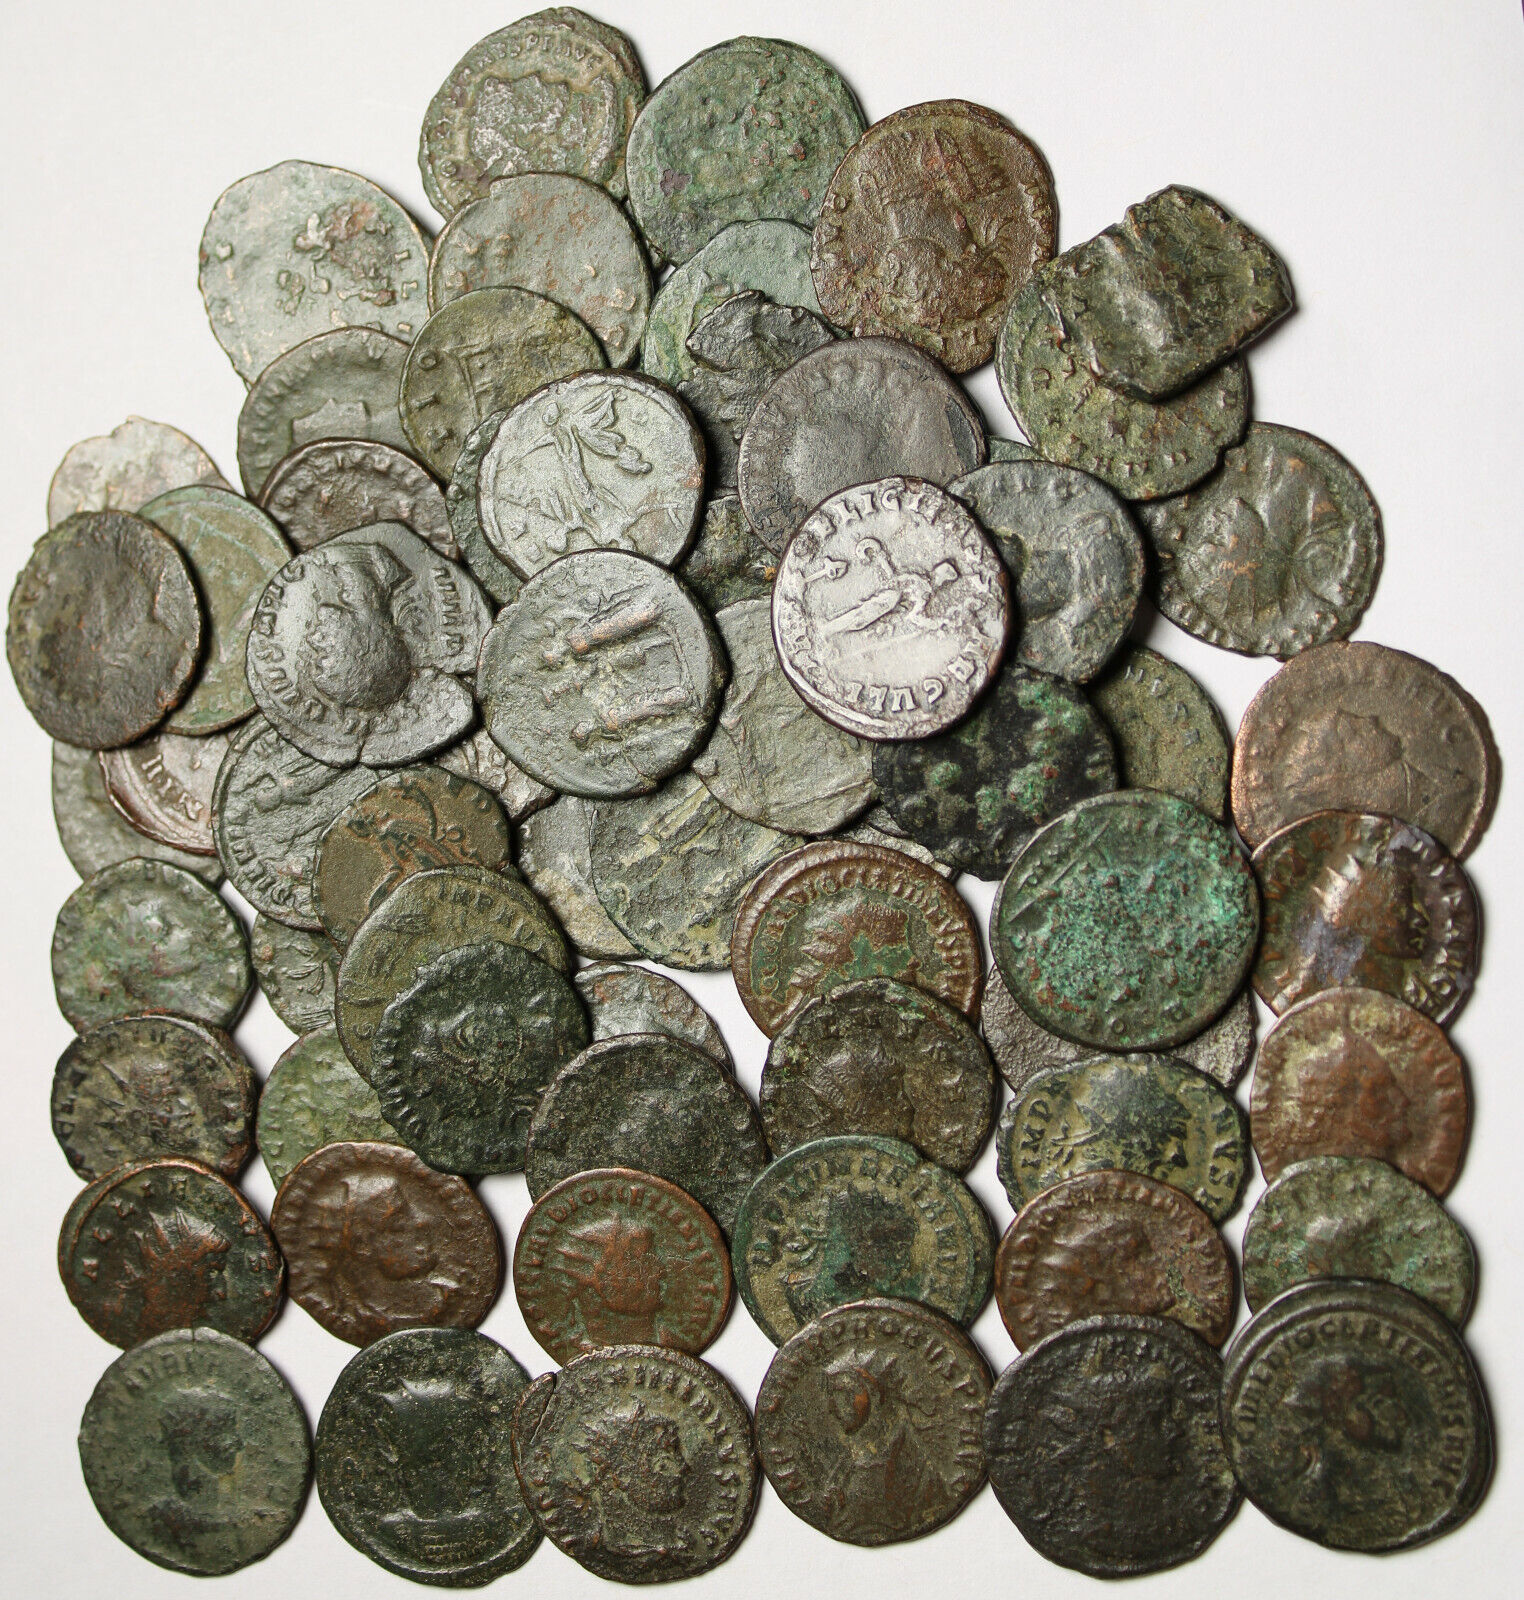 Lot of 3 Rare original Ancient Roman Antoninianus coins Probus Aurelian Claudius Без бренда - фотография #4